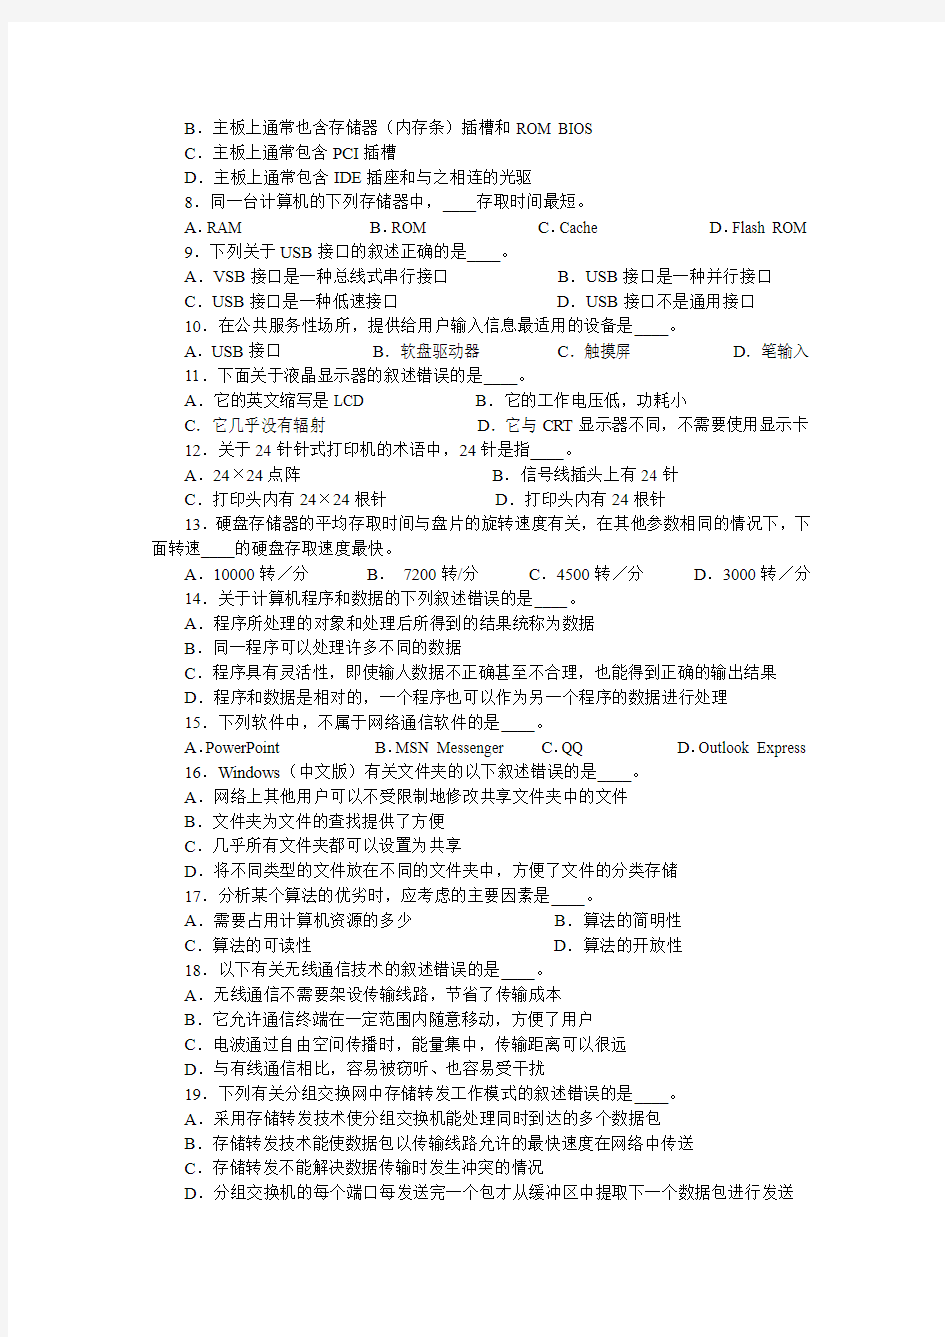 江苏计算机等级考试2013年(春)一级考试试卷 (1)